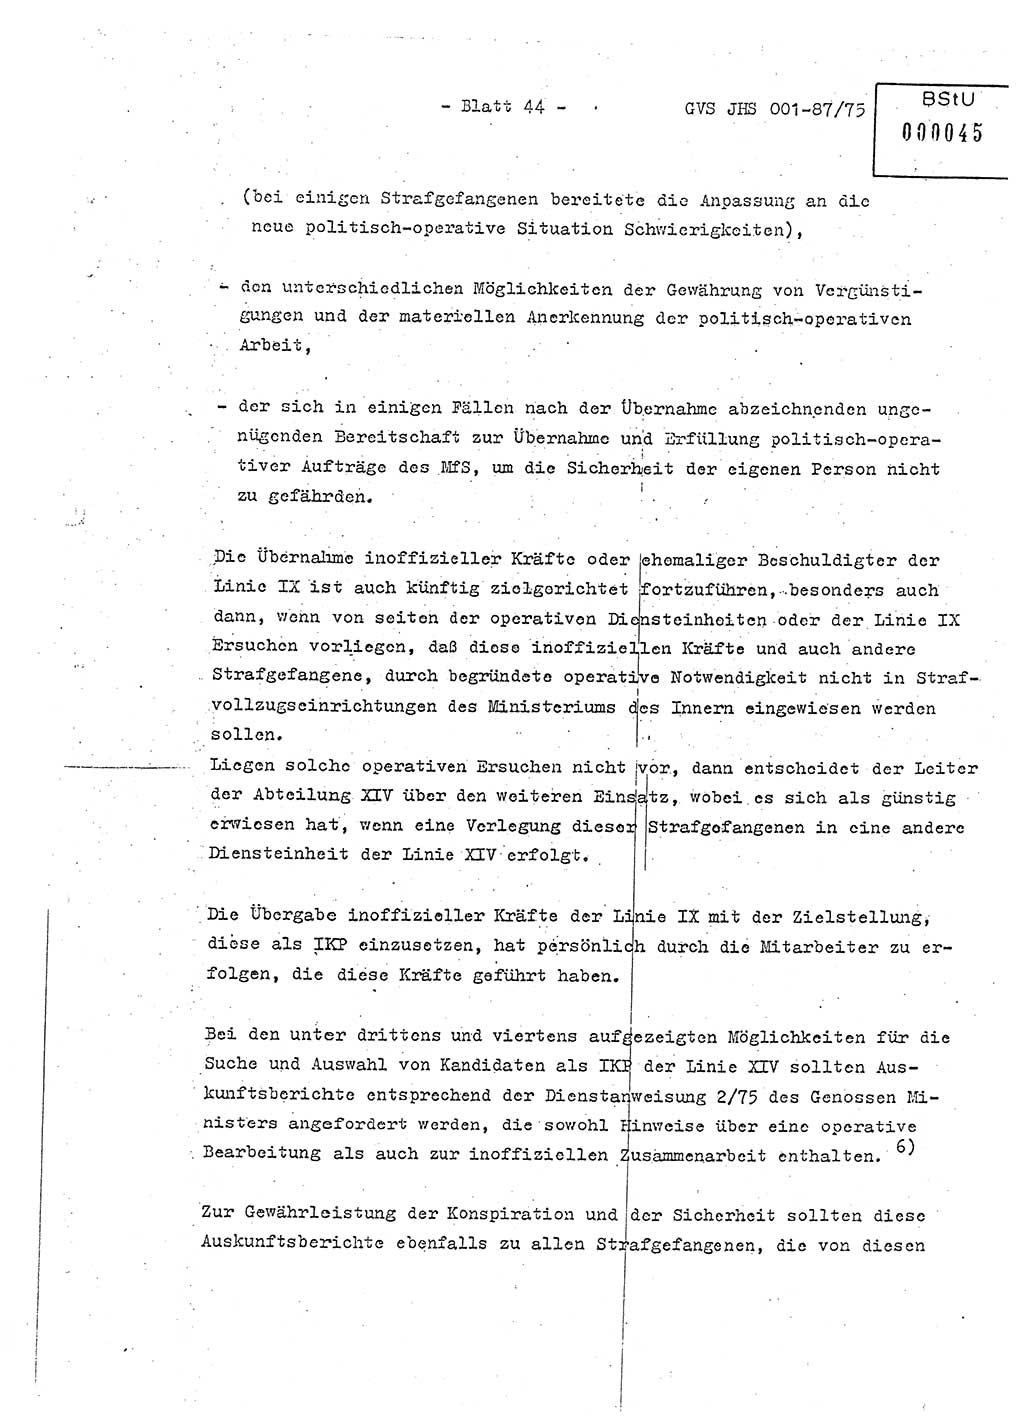 Diplomarbeit Hauptmann Volkmar Heinz (Abt. ⅩⅣ), Oberleutnant Lothar Rüdiger (BV Lpz. Abt. Ⅺ), Ministerium für Staatssicherheit (MfS) [Deutsche Demokratische Republik (DDR)], Juristische Hochschule (JHS), Geheime Verschlußsache (GVS) o001-87/75, Potsdam 1975, Seite 44 (Dipl.-Arb. MfS DDR JHS GVS o001-87/75 1975, S. 44)